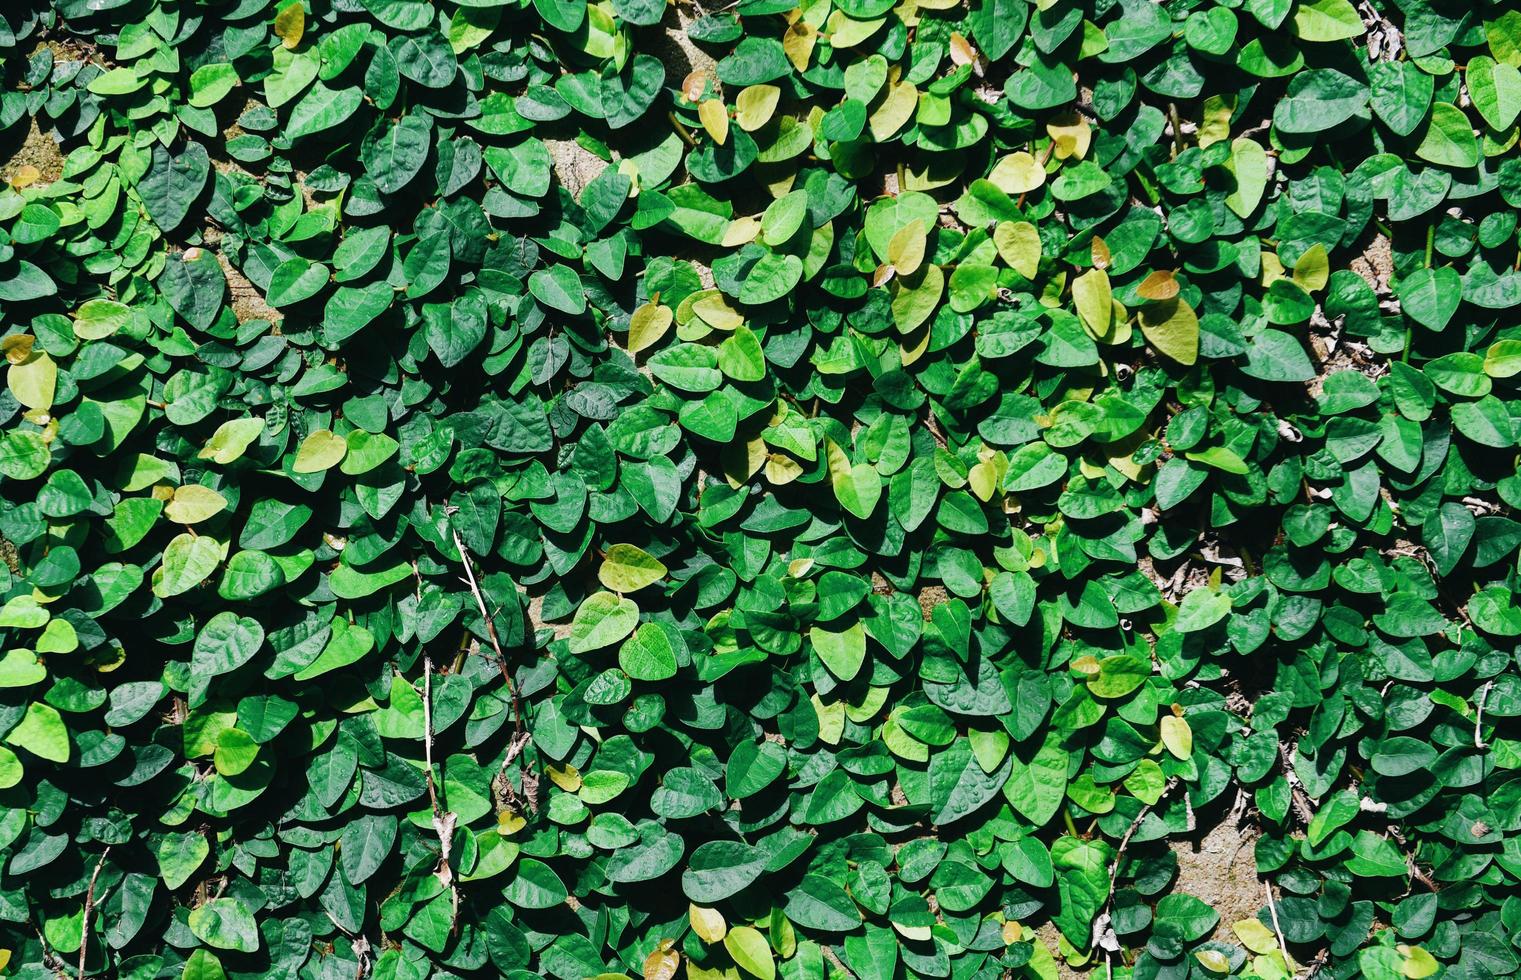 textura hermoso fondo verde natural, vista superior - fondo de planta hoja verde poco creciendo en el suelo o en la pared foto